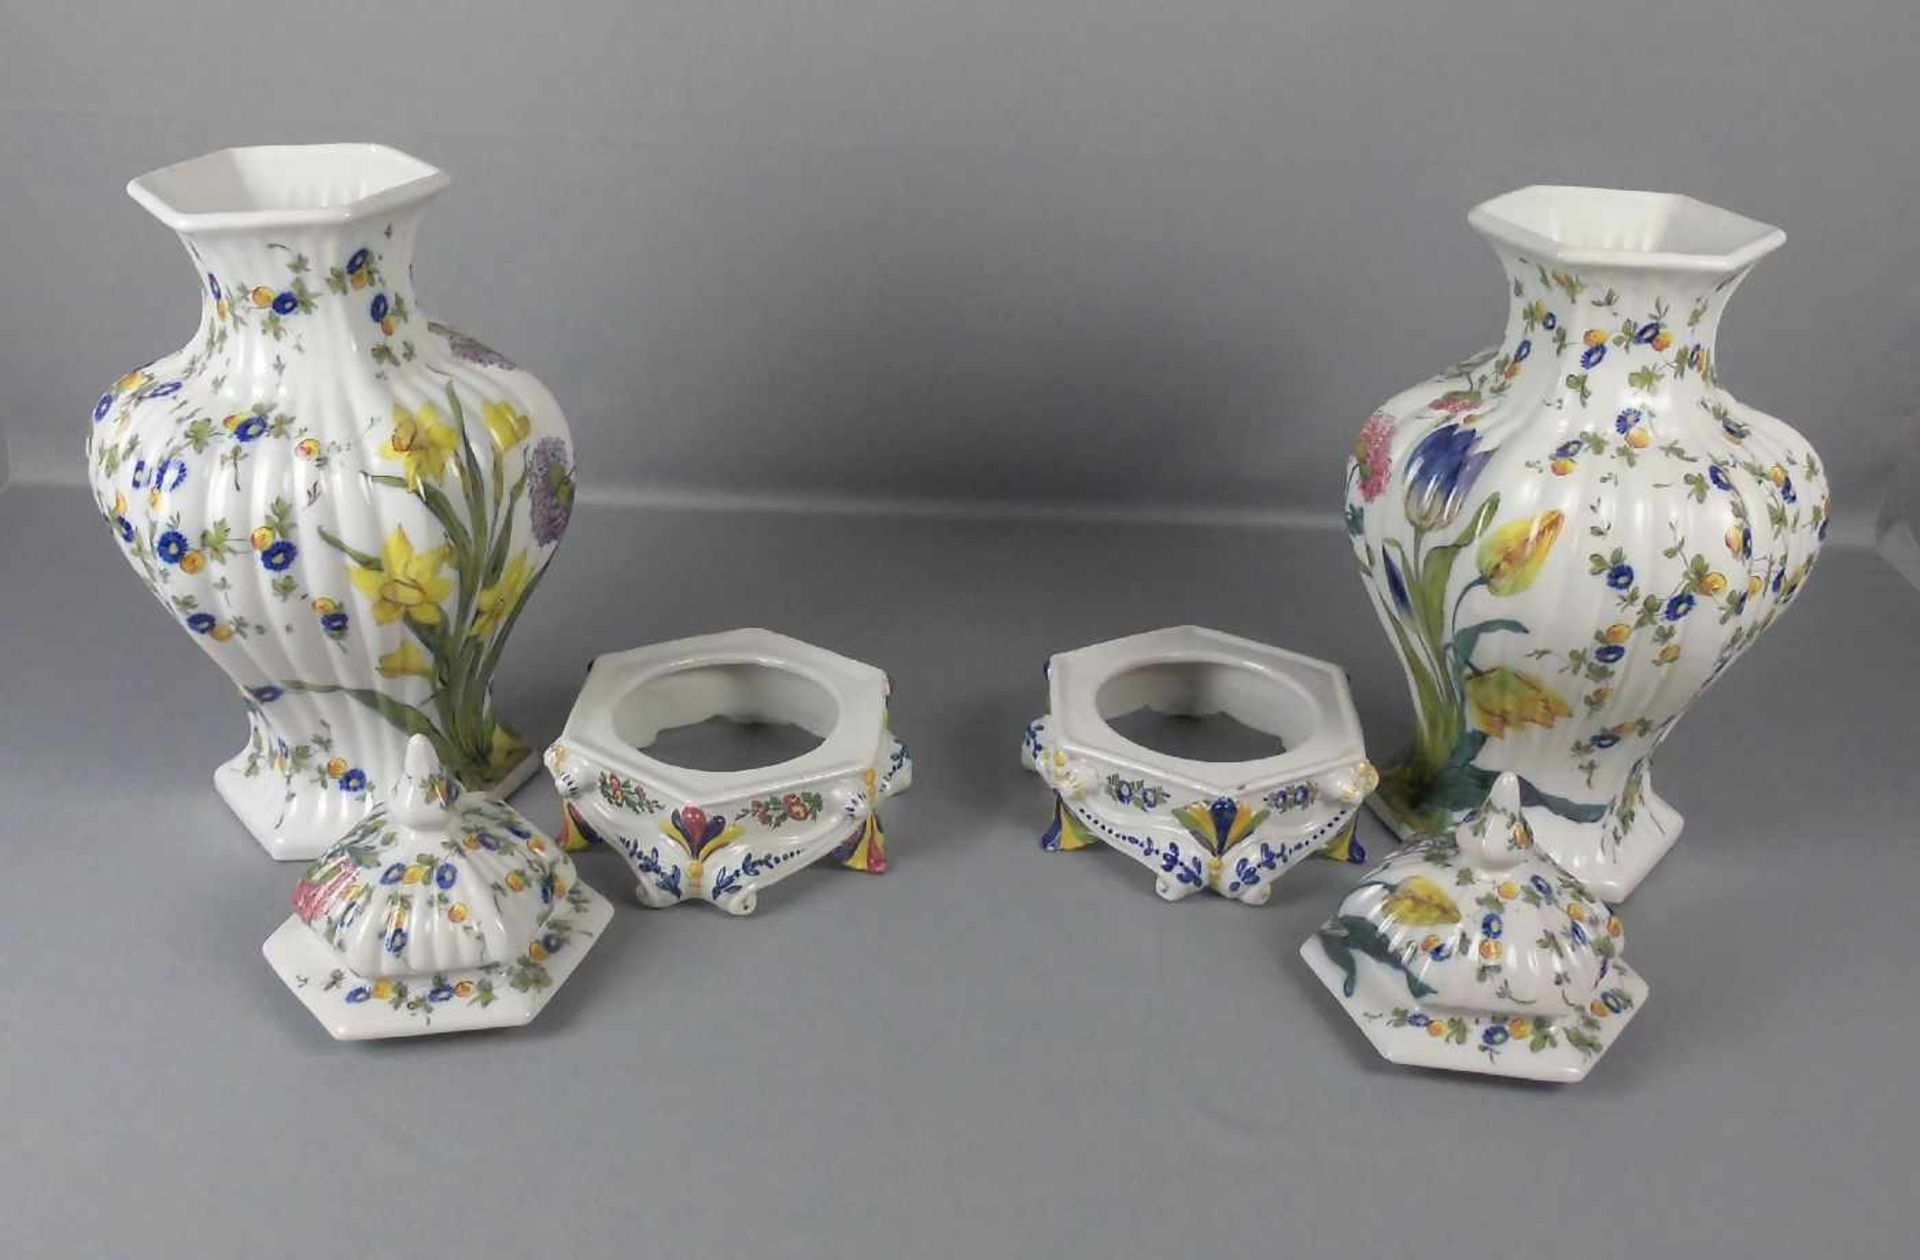 PAAR DECKELVASEN, Keramik unter dem Stand gemarkt mit Sternmotiv, dreiteilig gearbeitet mit - Image 3 of 4